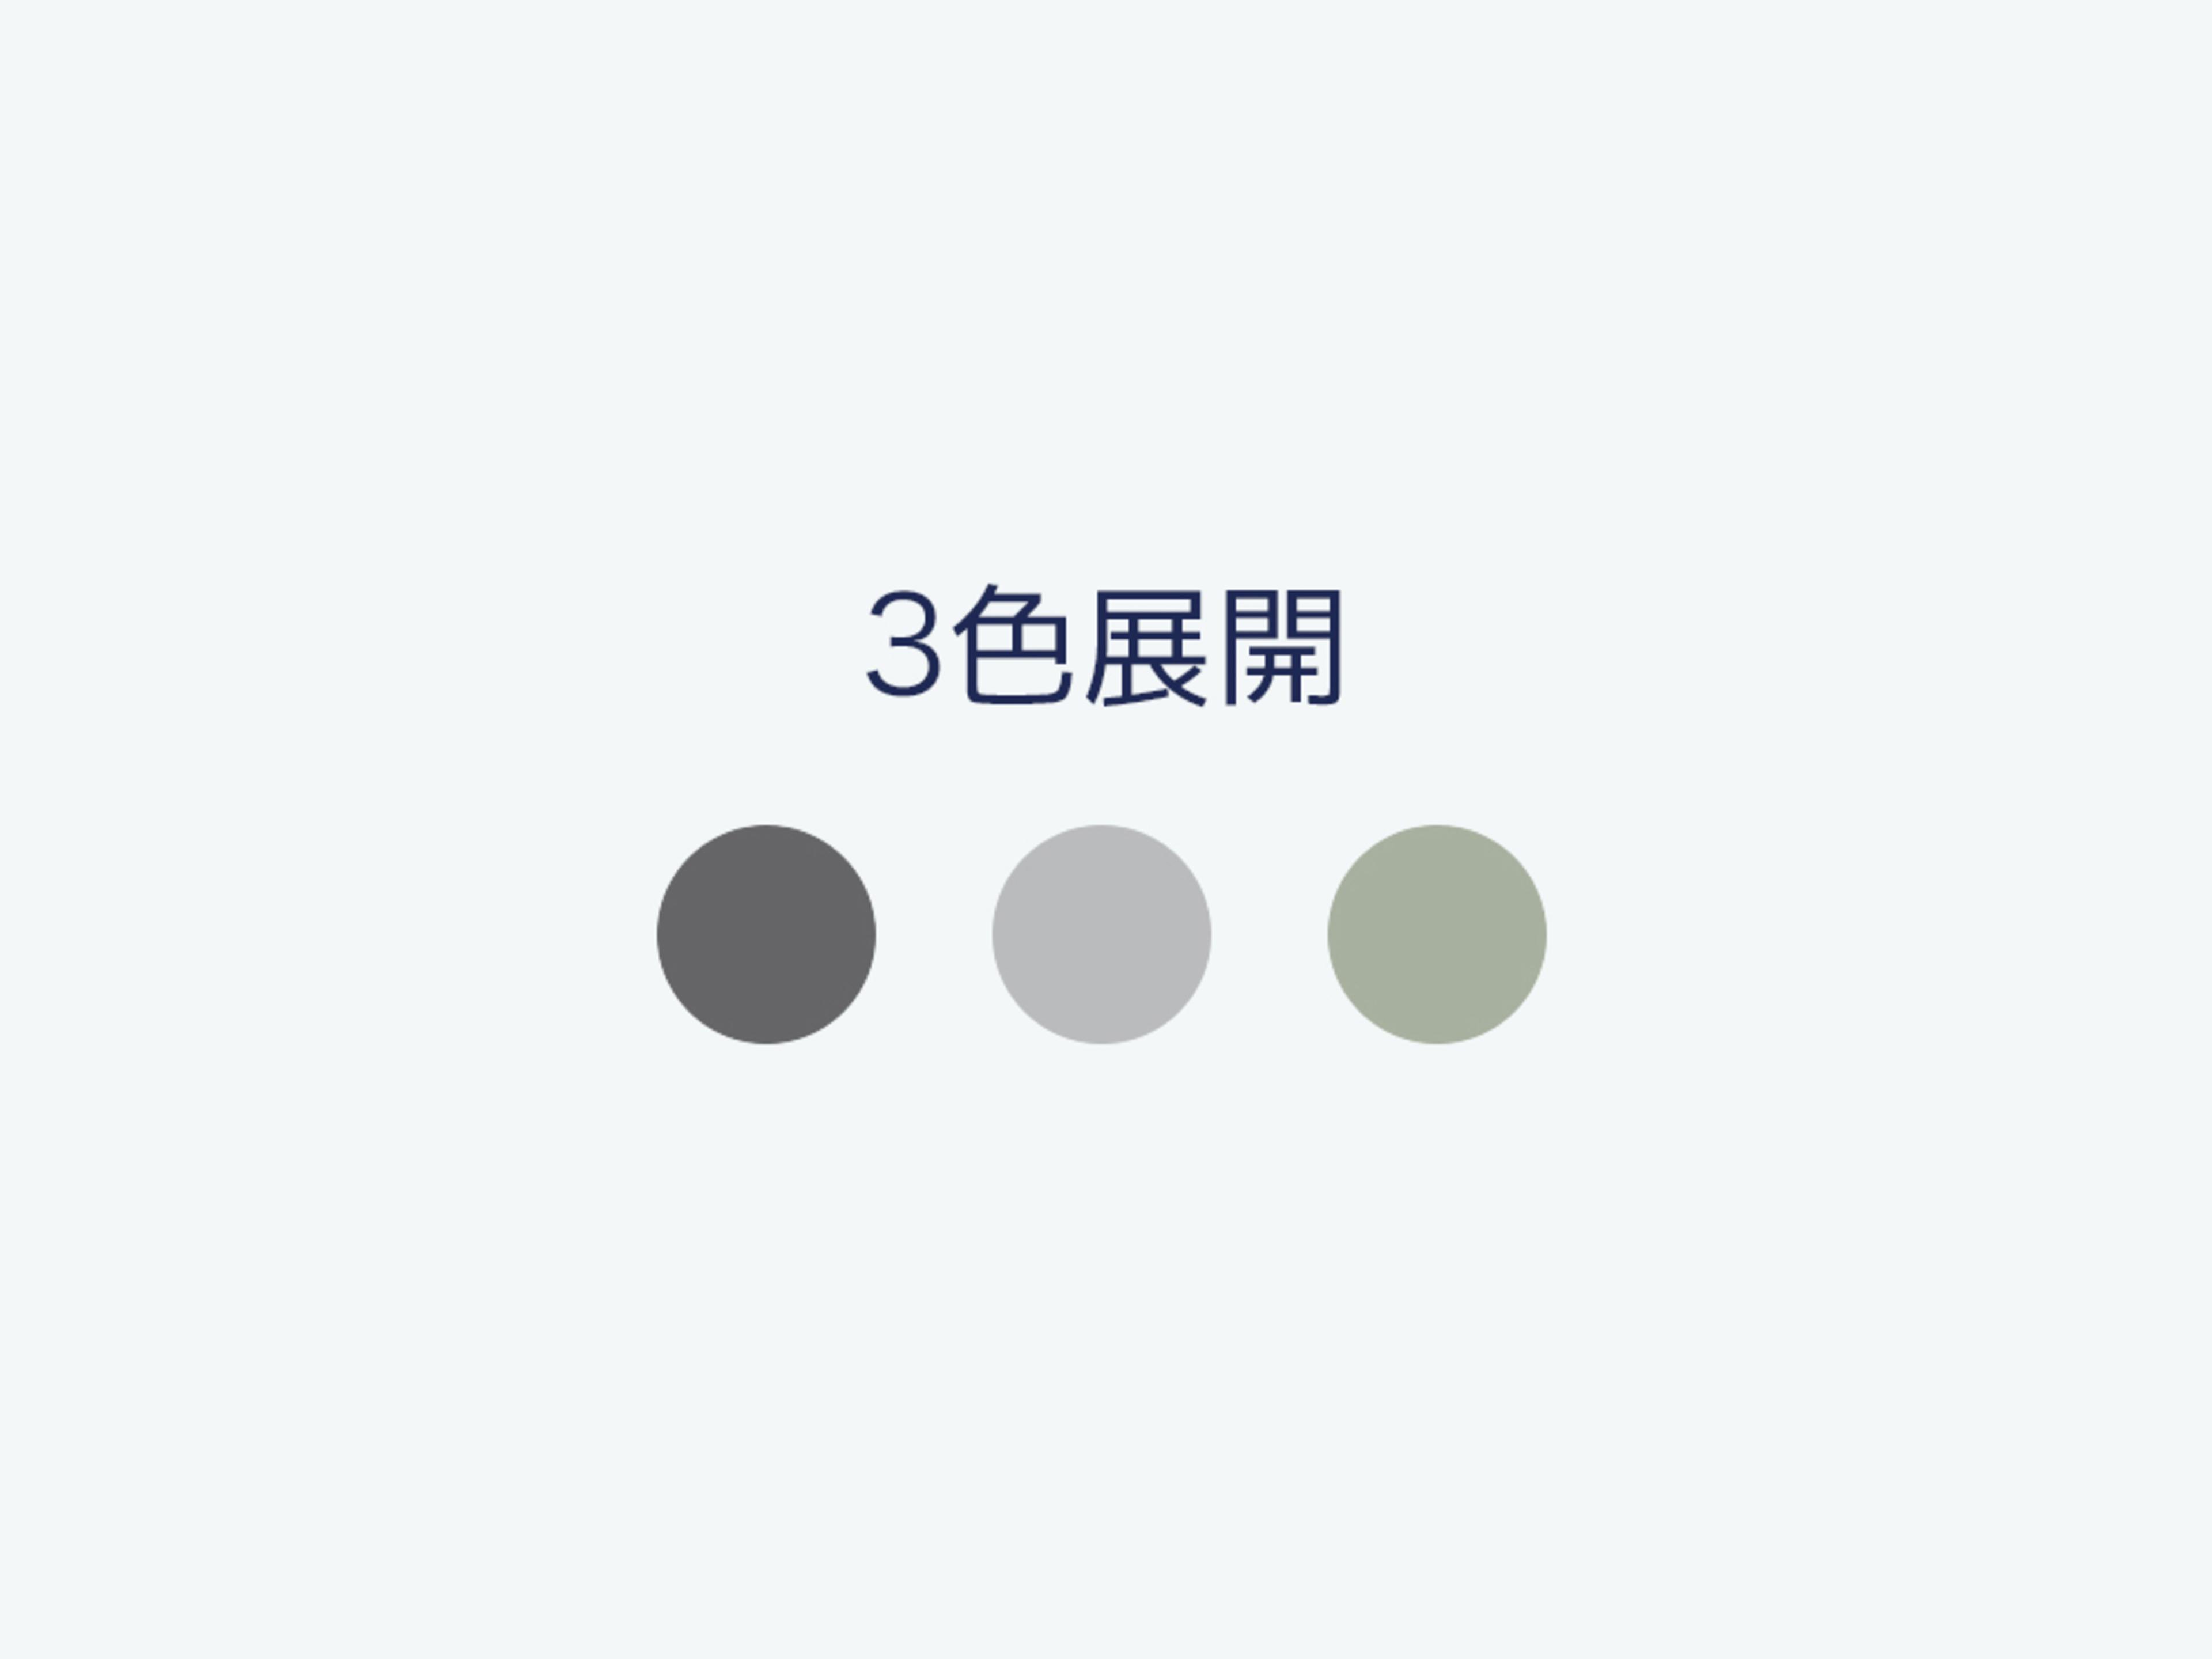 JP > Sofa Range > Comparison Table > コアラソファーベッド BOXY > Colors